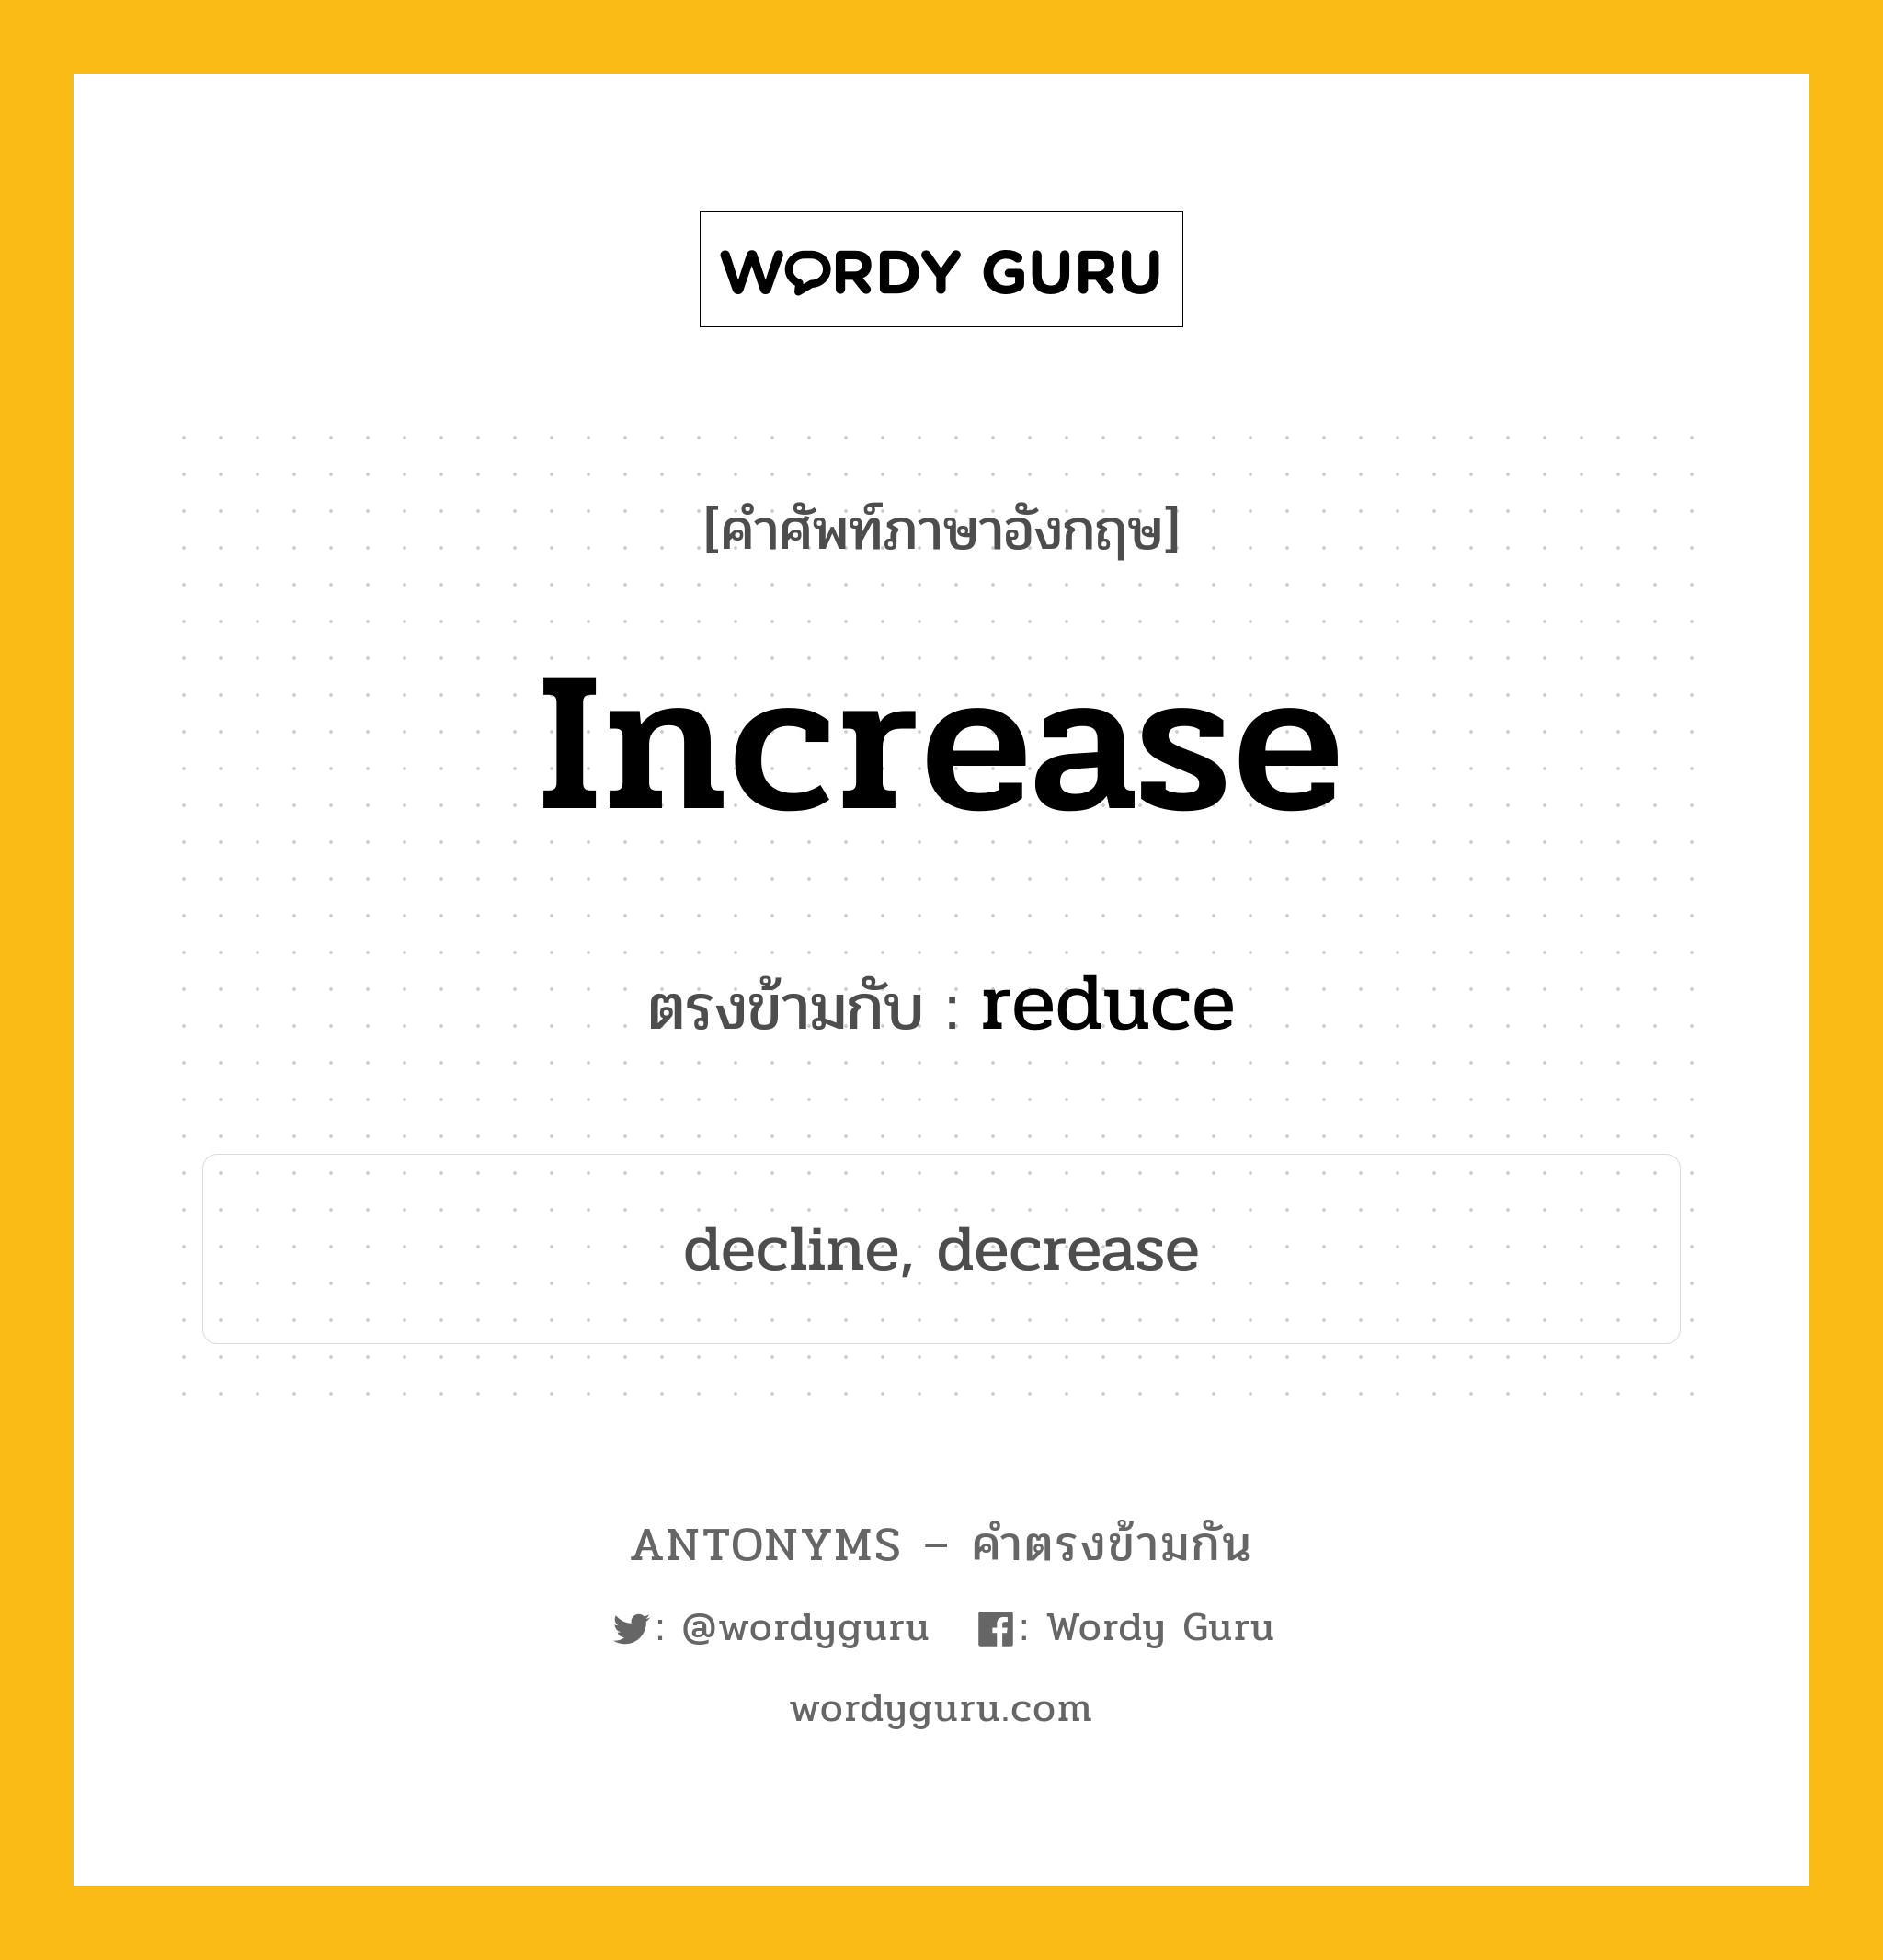 increase เป็นคำตรงข้ามกับคำไหนบ้าง?, คำศัพท์ภาษาอังกฤษ increase ตรงข้ามกับ reduce หมวด reduce